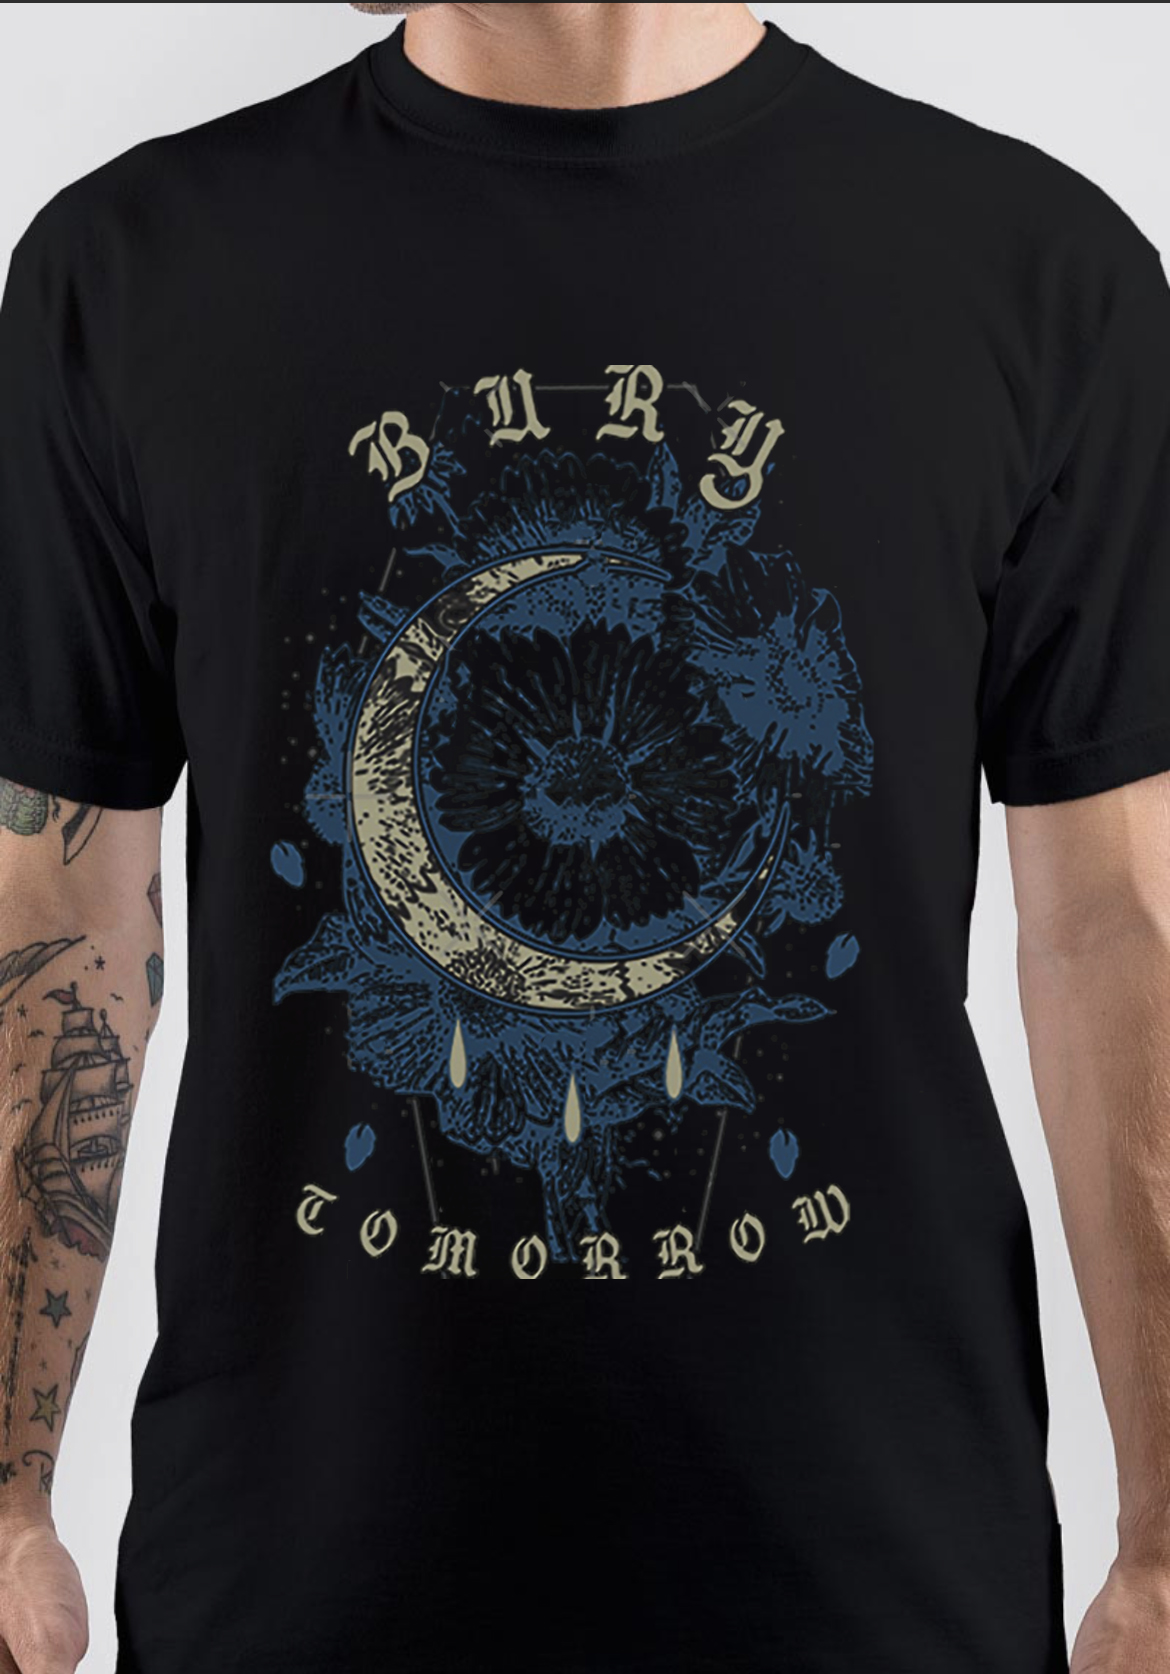 Bury Tomorrow T-Shirt | Swag Shirts